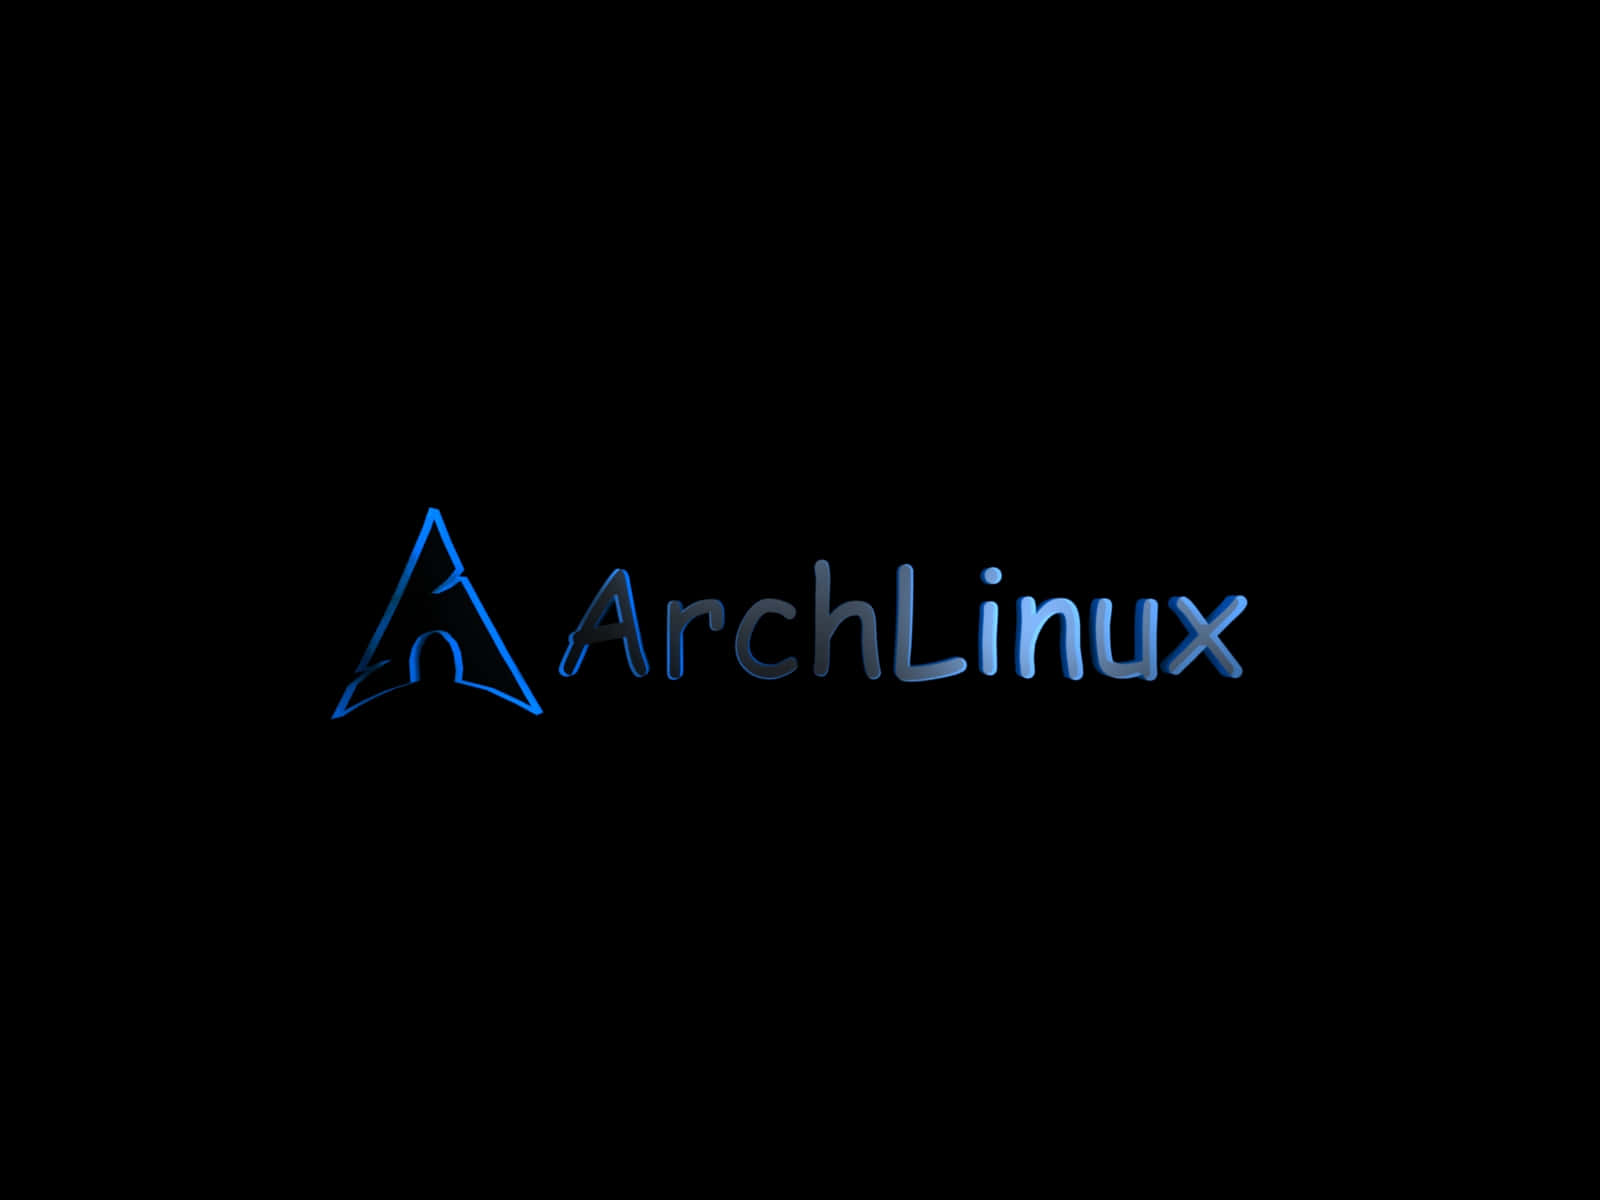 Archlinux Logo On A Black Background